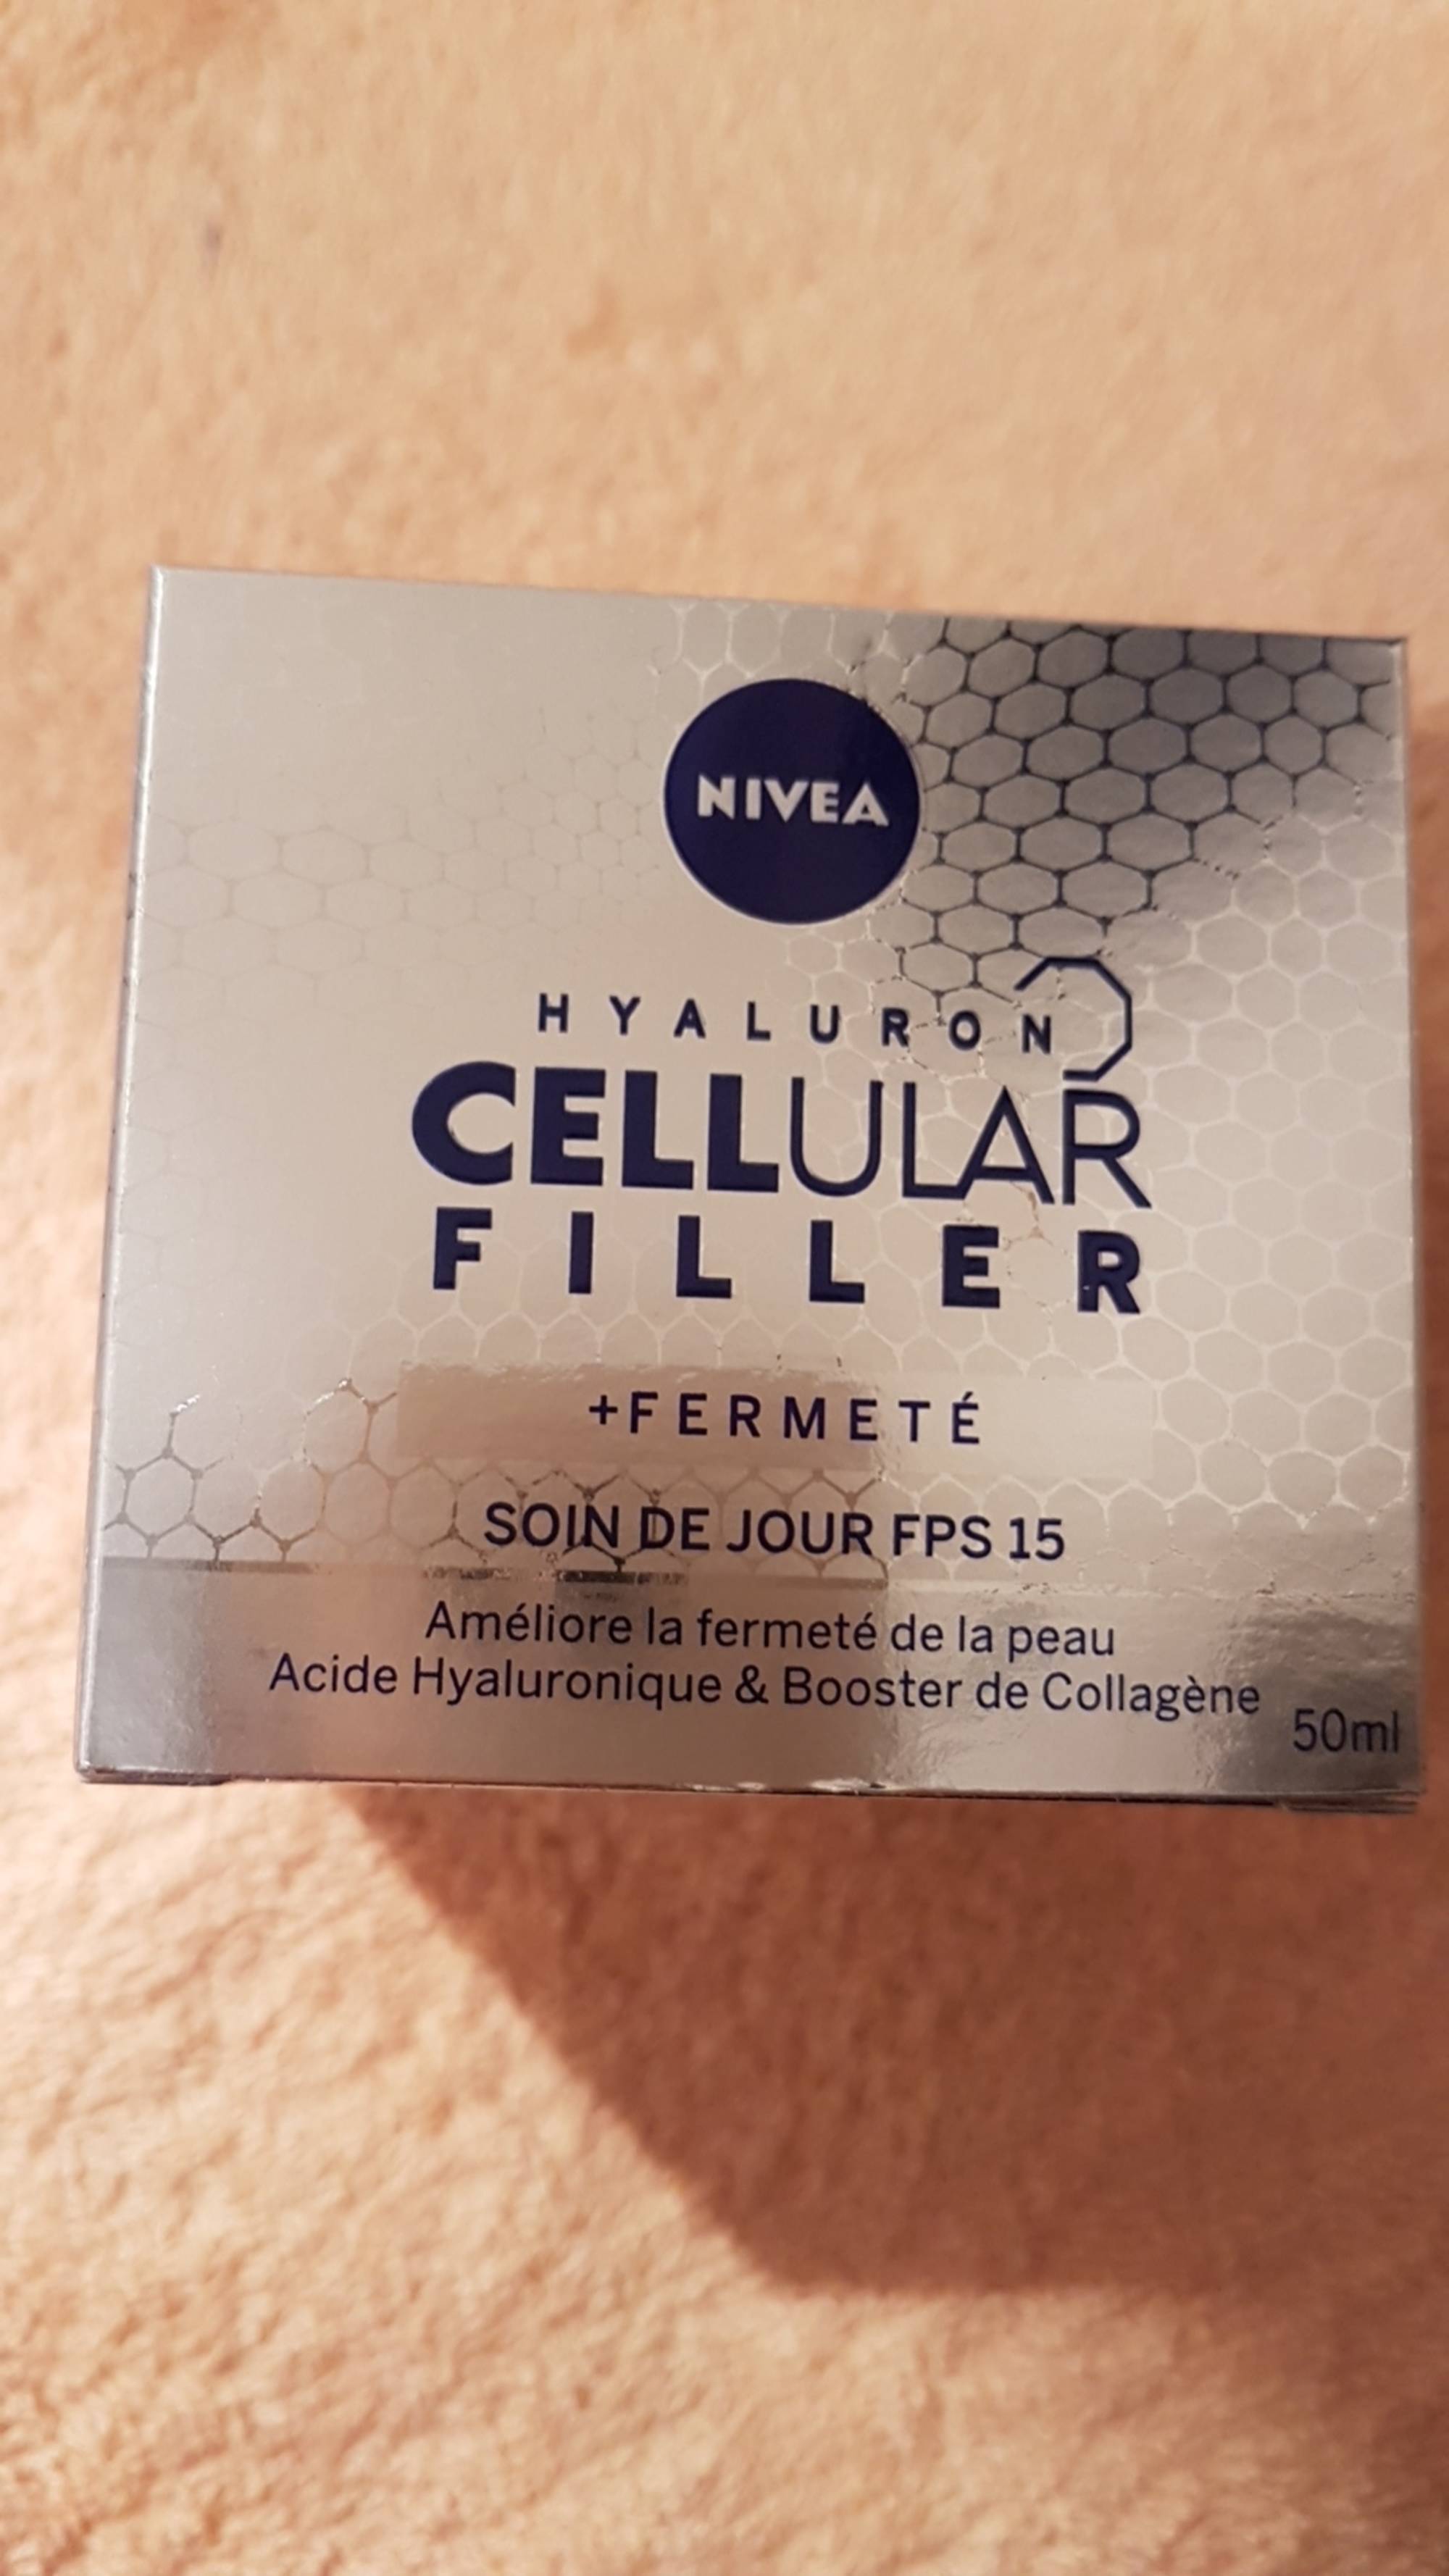 NIVEA - Hyaluron Cellular Filler + Fermeté - Soin de jour FPS 15